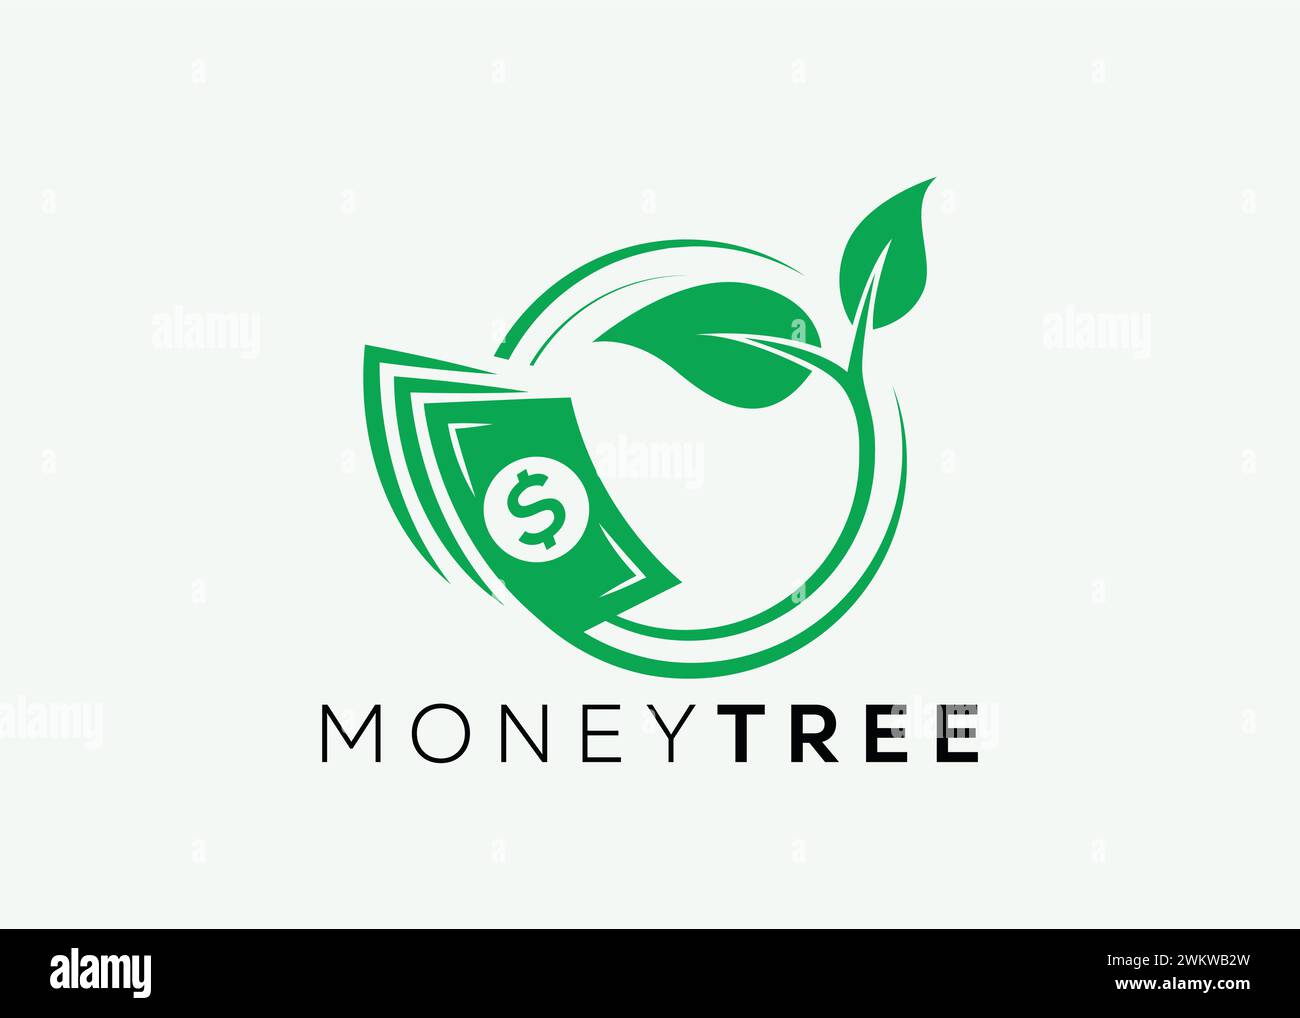 Modello vettoriale minimalista per la progettazione del logo Money Tree. Il denaro aumenta gli investimenti per il logo finanziario aziendale. Logo di investimento in denaro Illustrazione Vettoriale